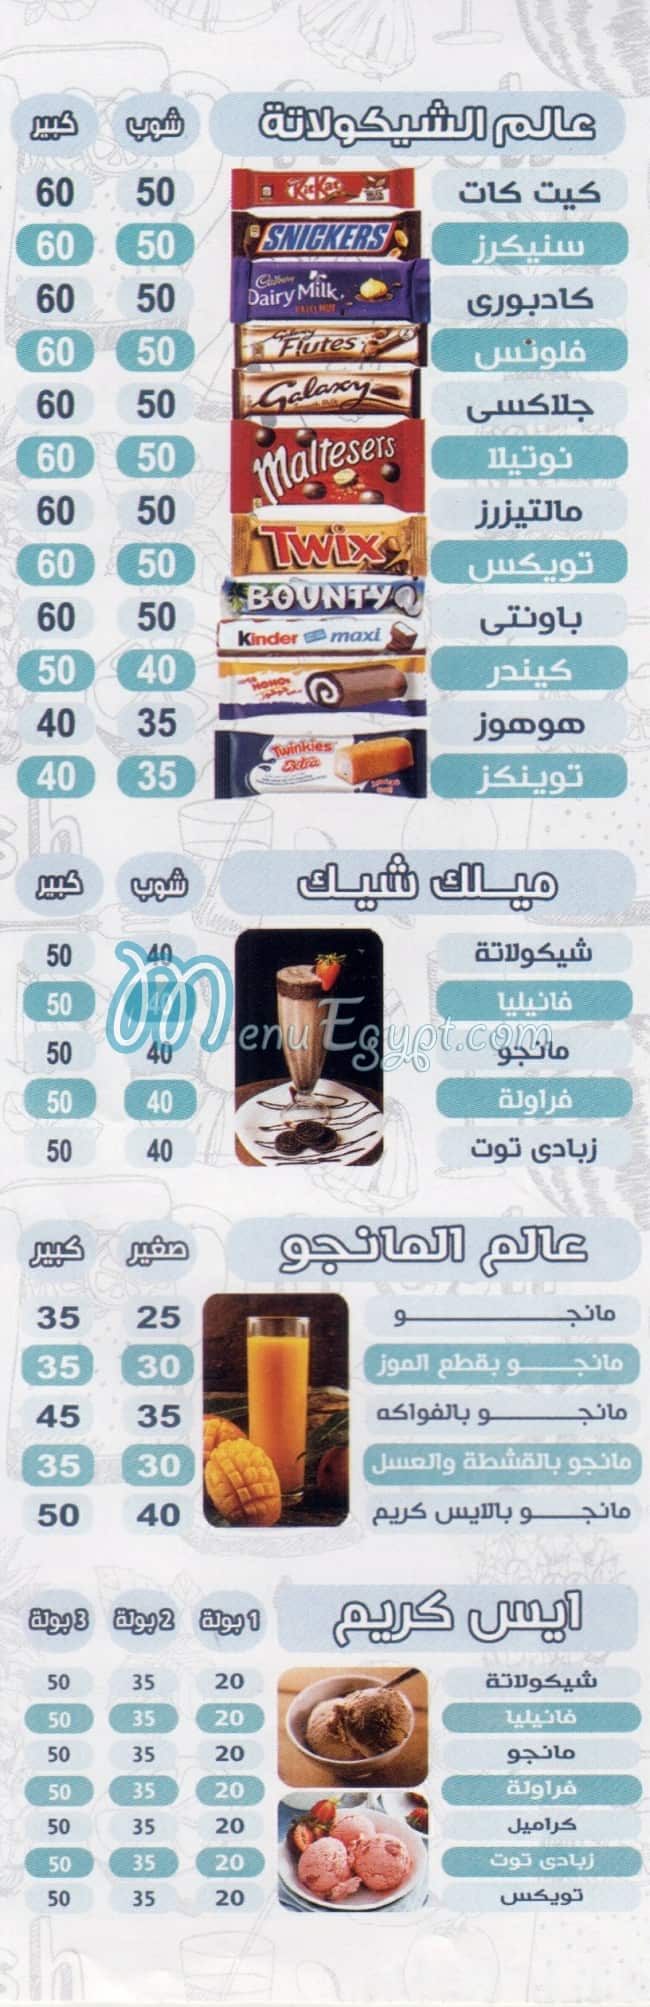 El Hossany menu Egypt